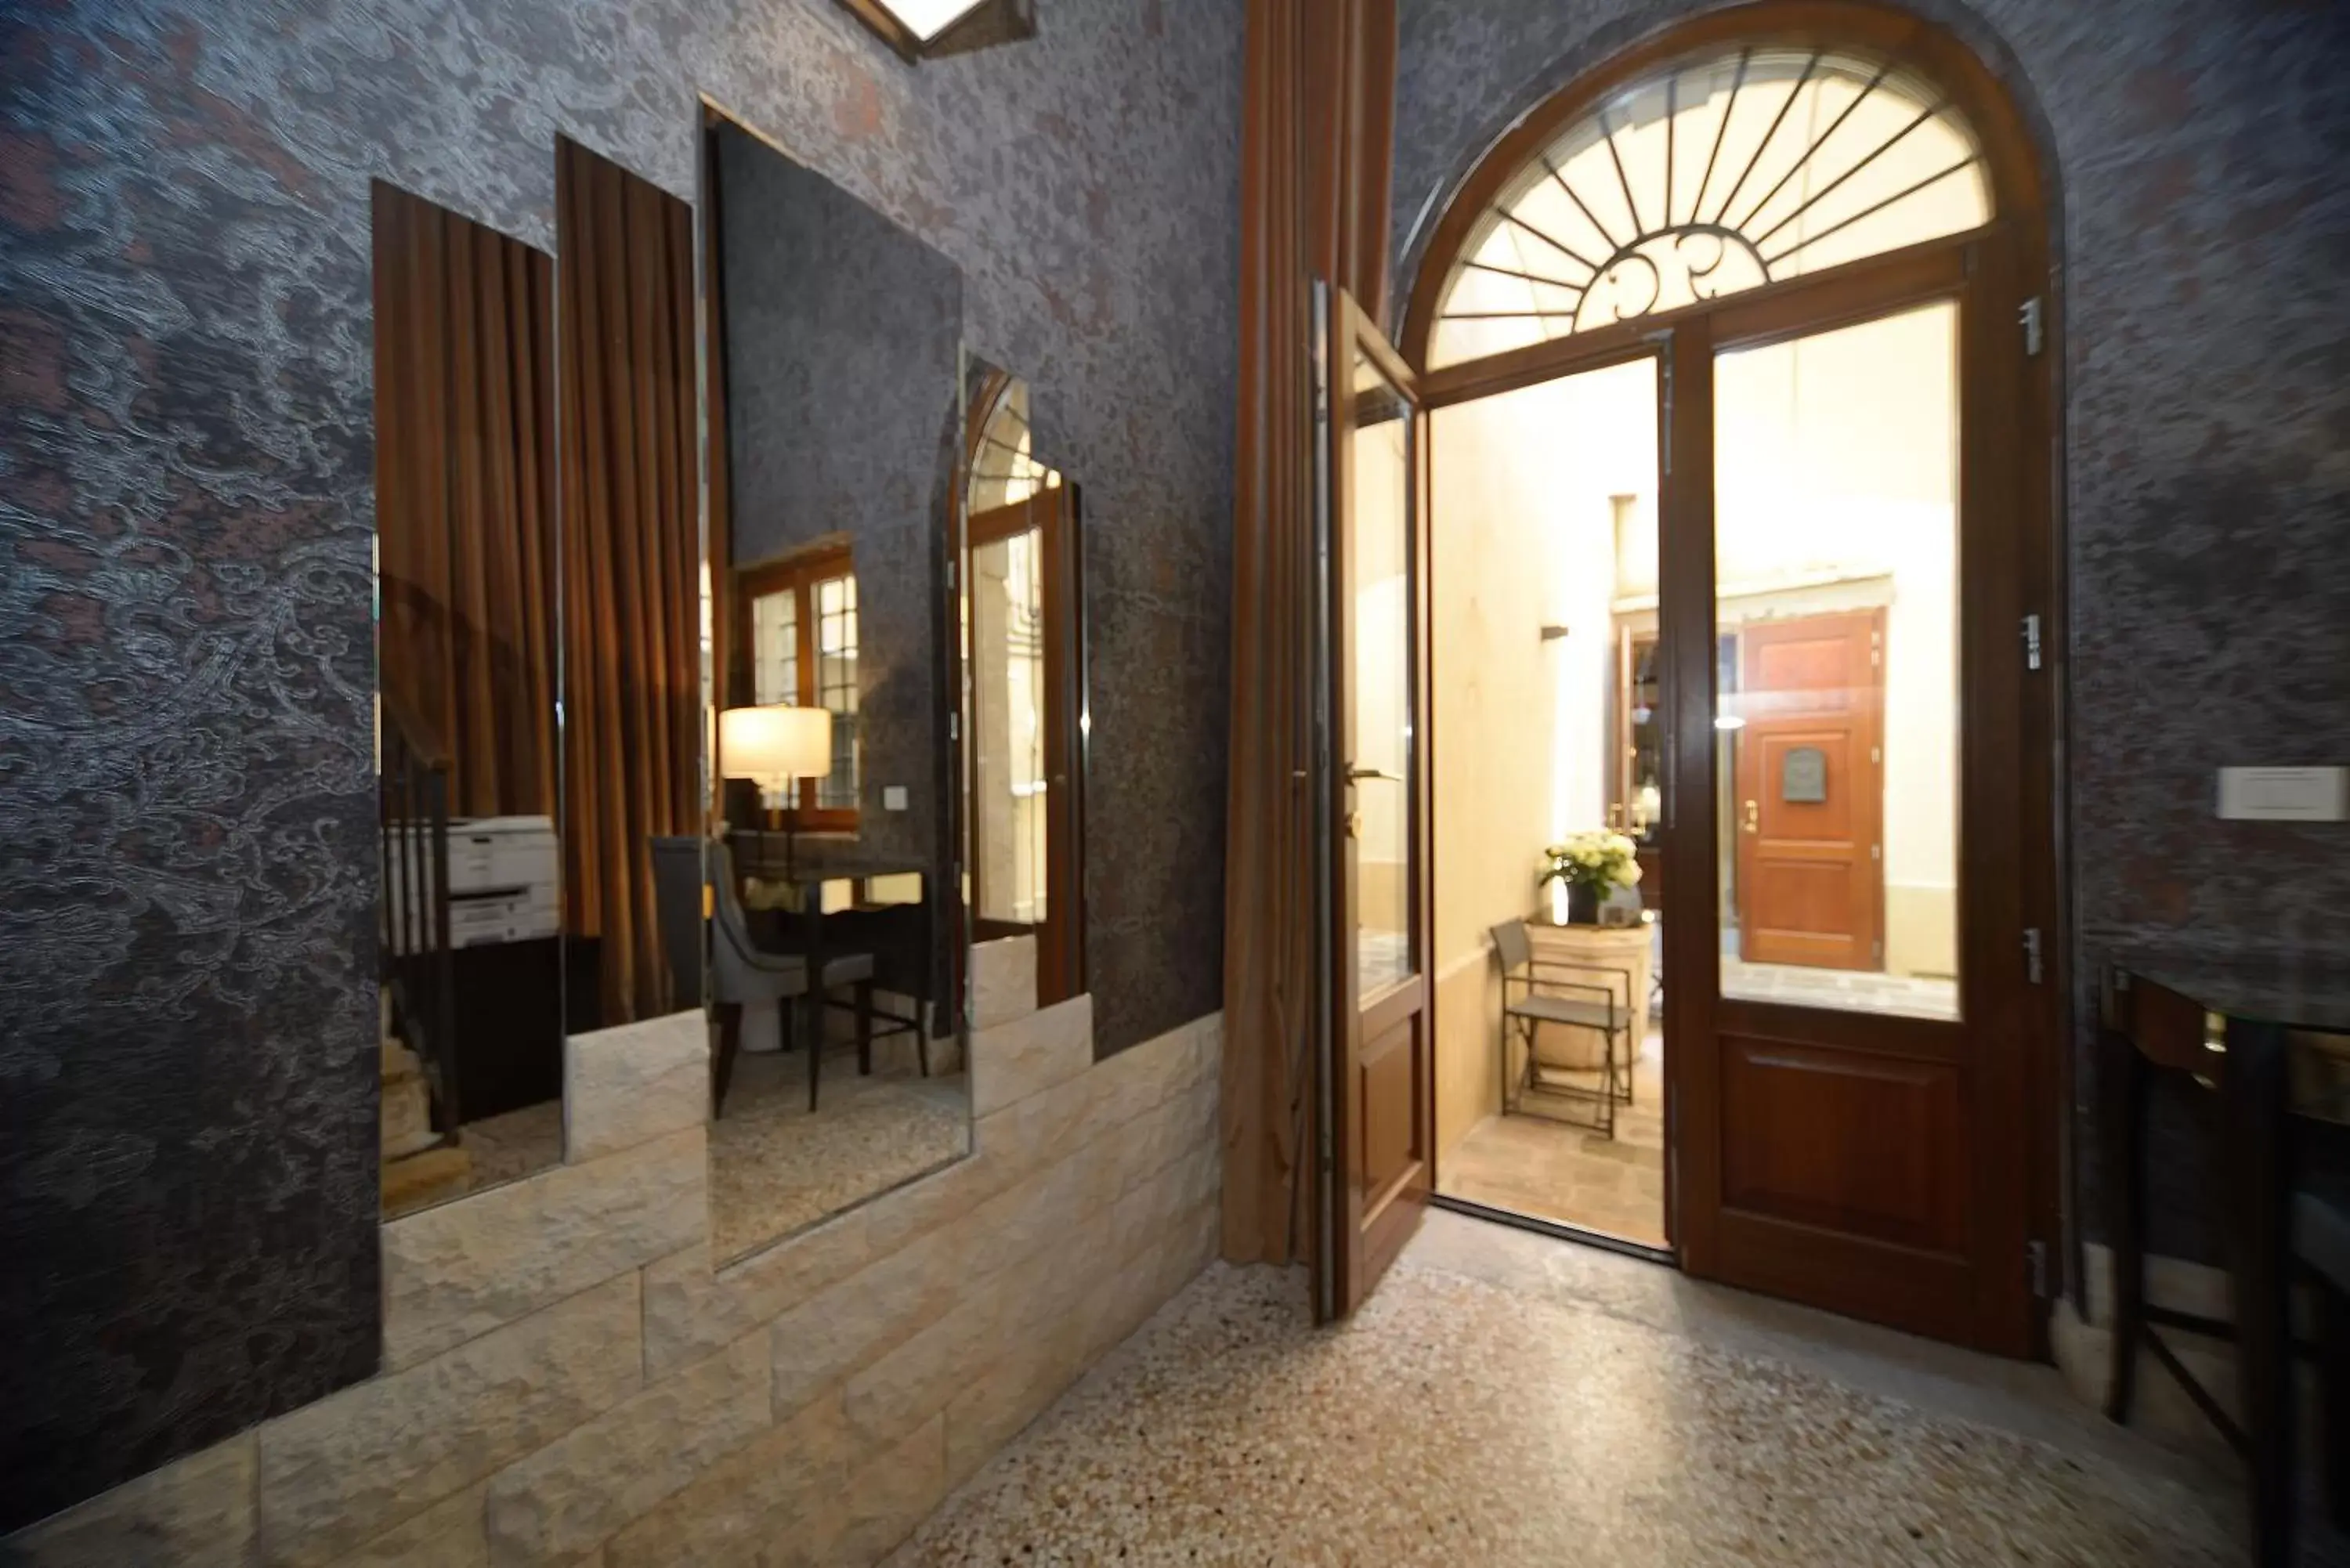 Lobby or reception in Residence La Fenice